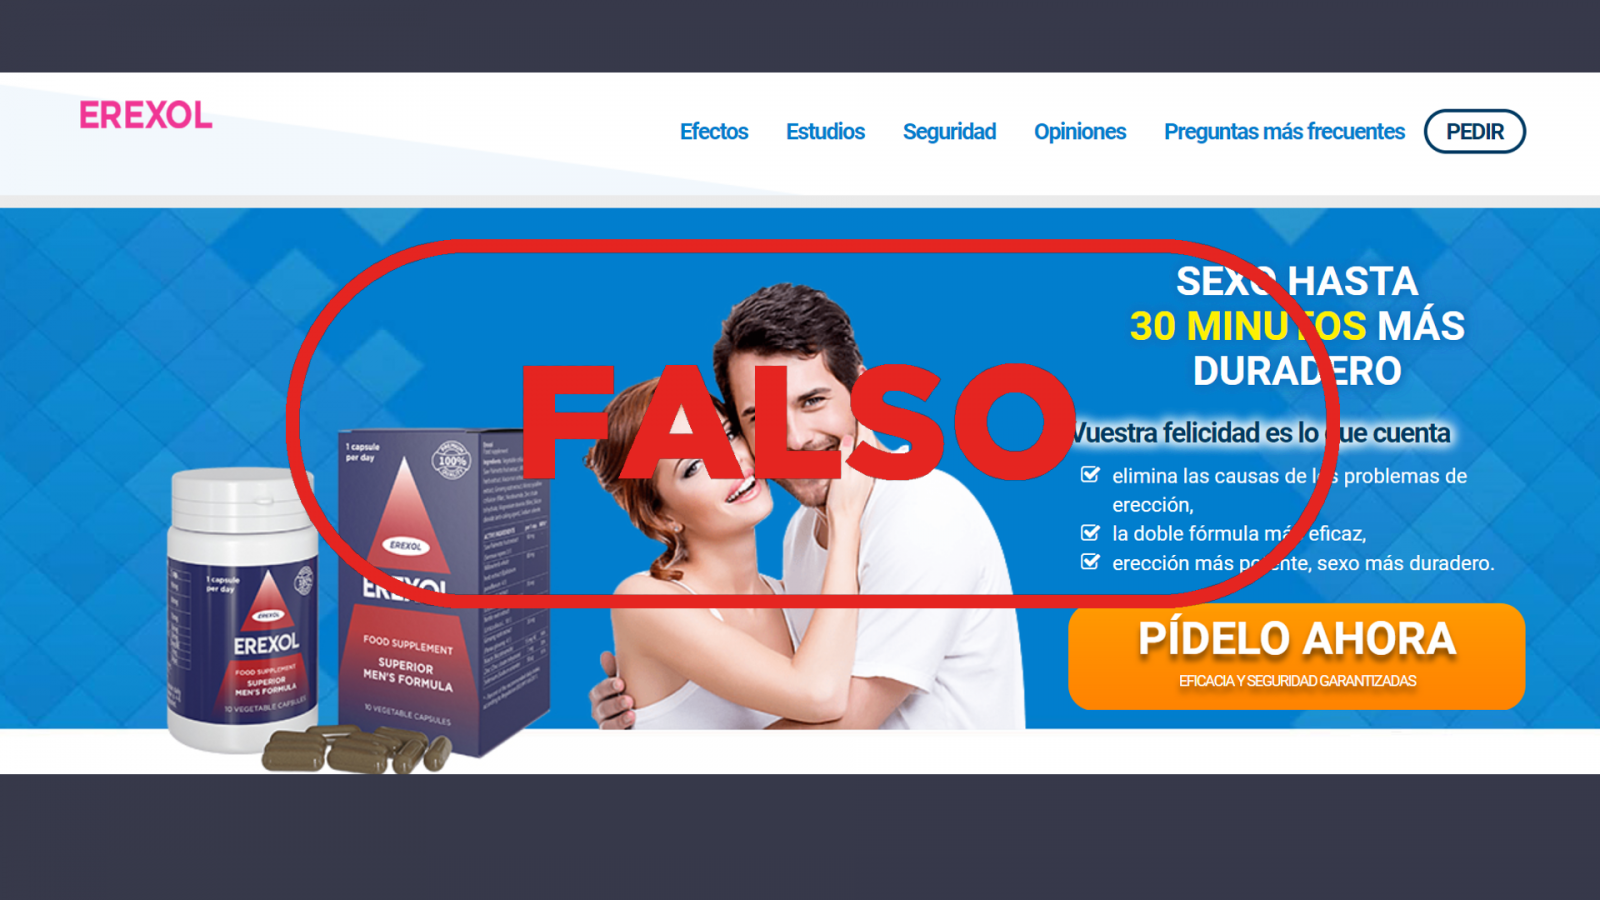 Página web que promociona la venta de un falso remedio para los problemas de erección, con el sello Falso en rojo